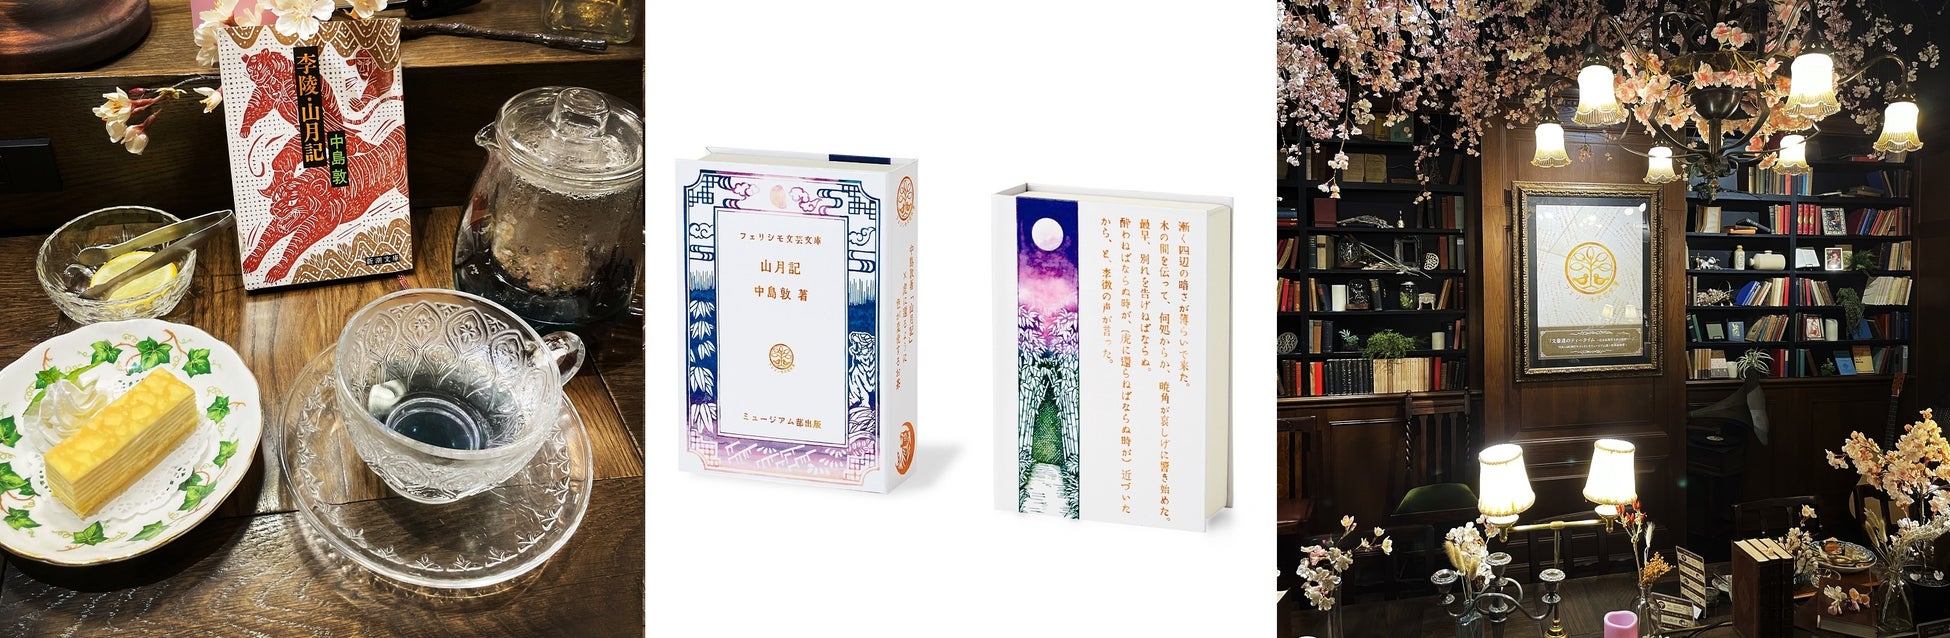 近現代日本の文学作品と文豪たちをイメージしたフェリシモと秋葉原和堂のコラボカフェ『文豪達のティータイム』がスタート